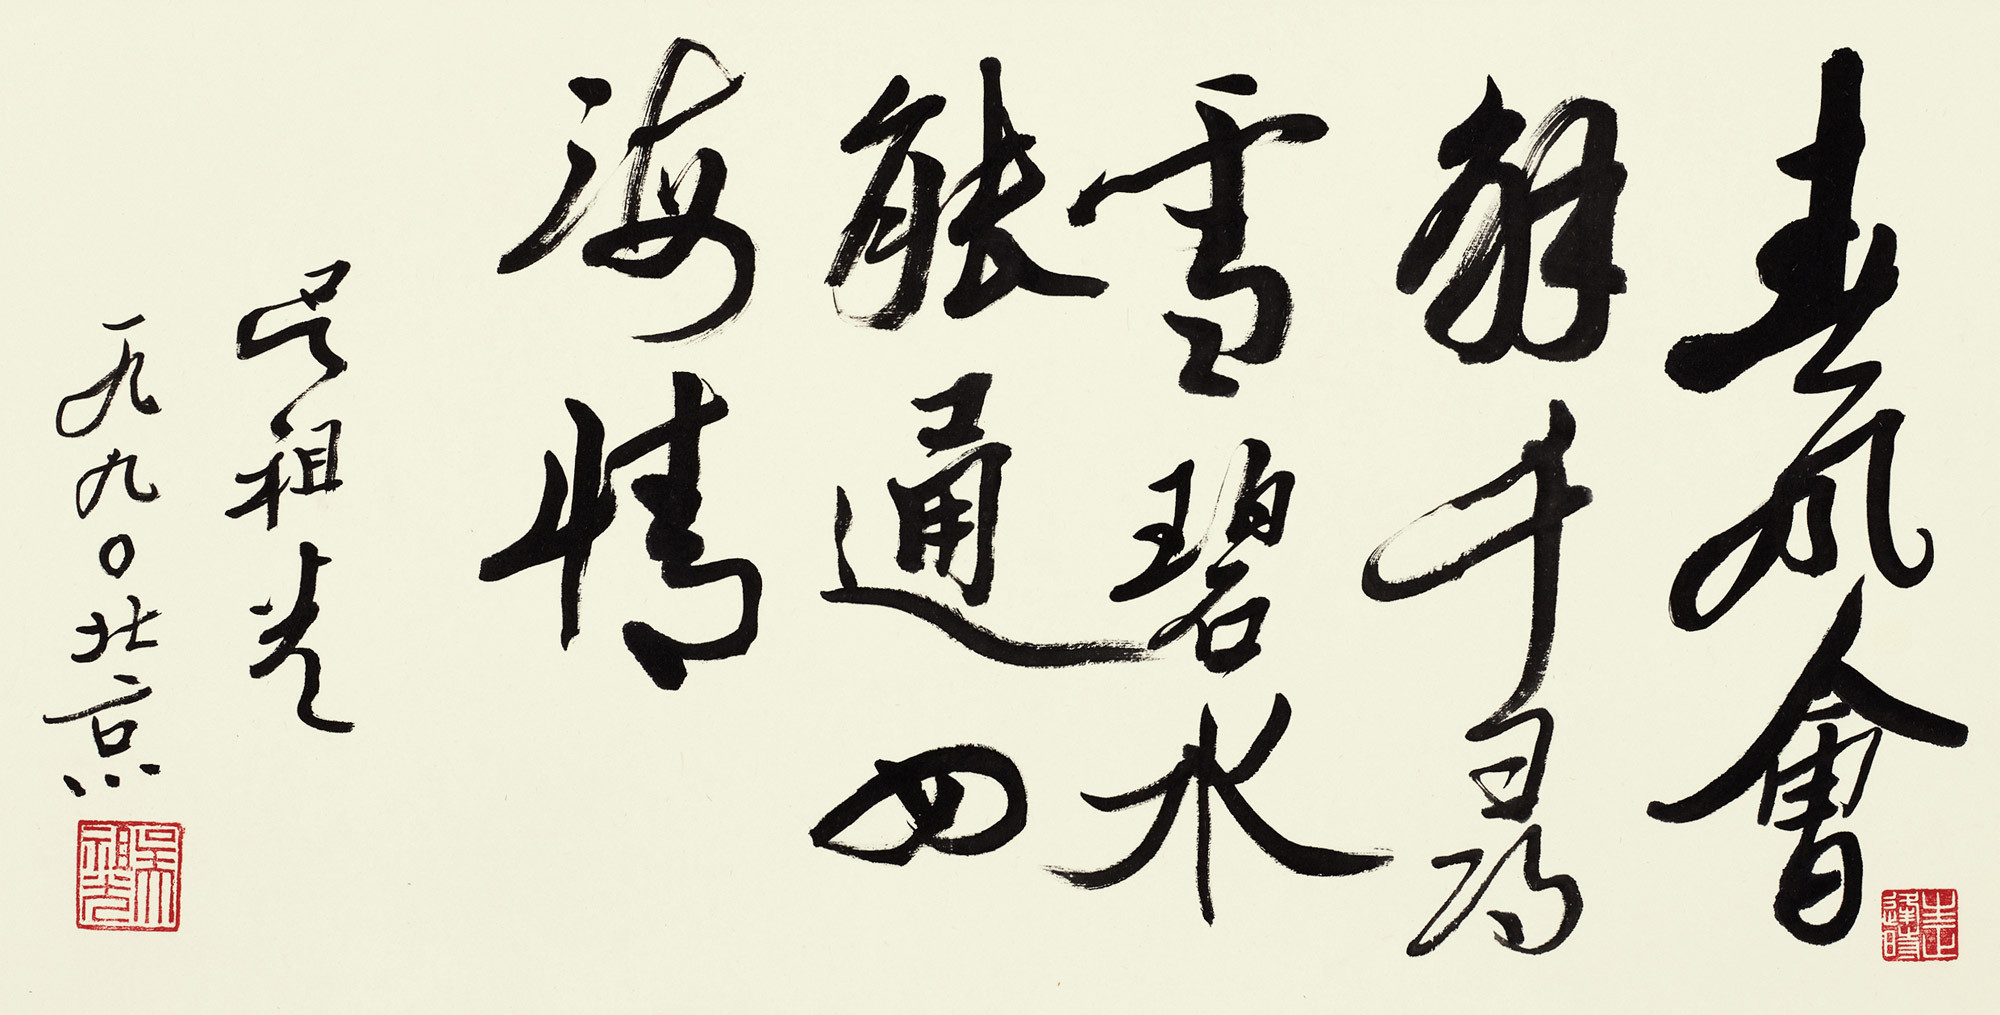 Calligraphy in Running Script